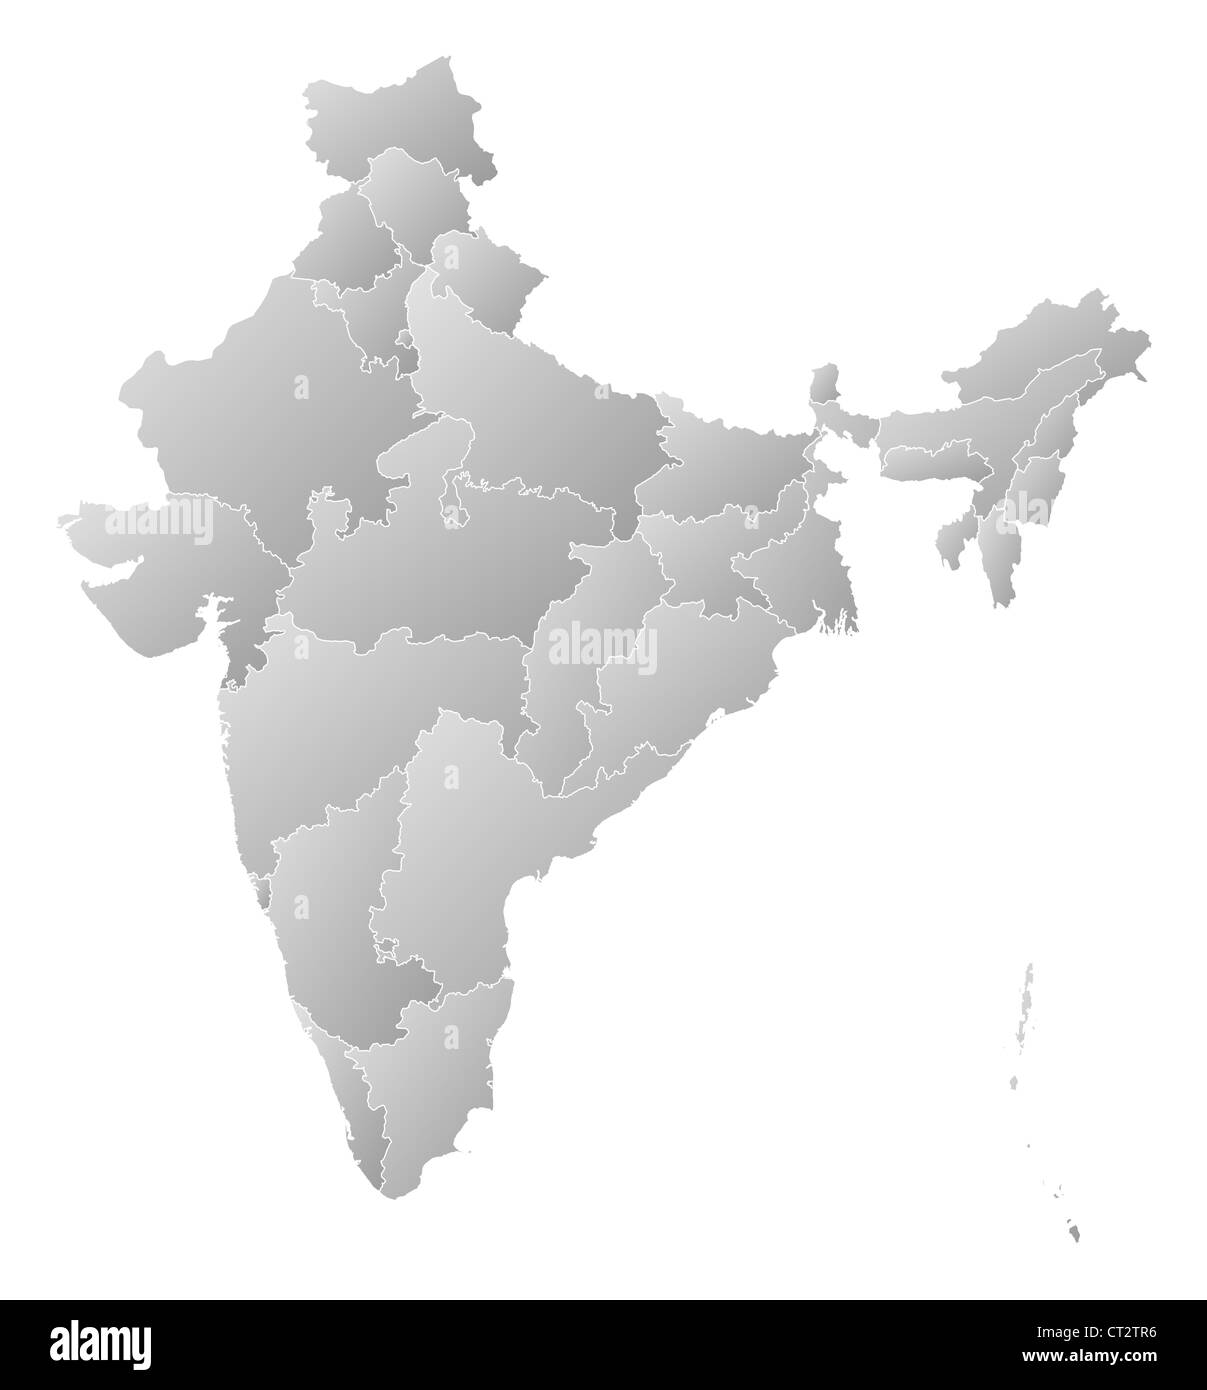 Mappa politico dell'India con i vari Stati in cui delle Laccadive è evidenziata. Foto Stock